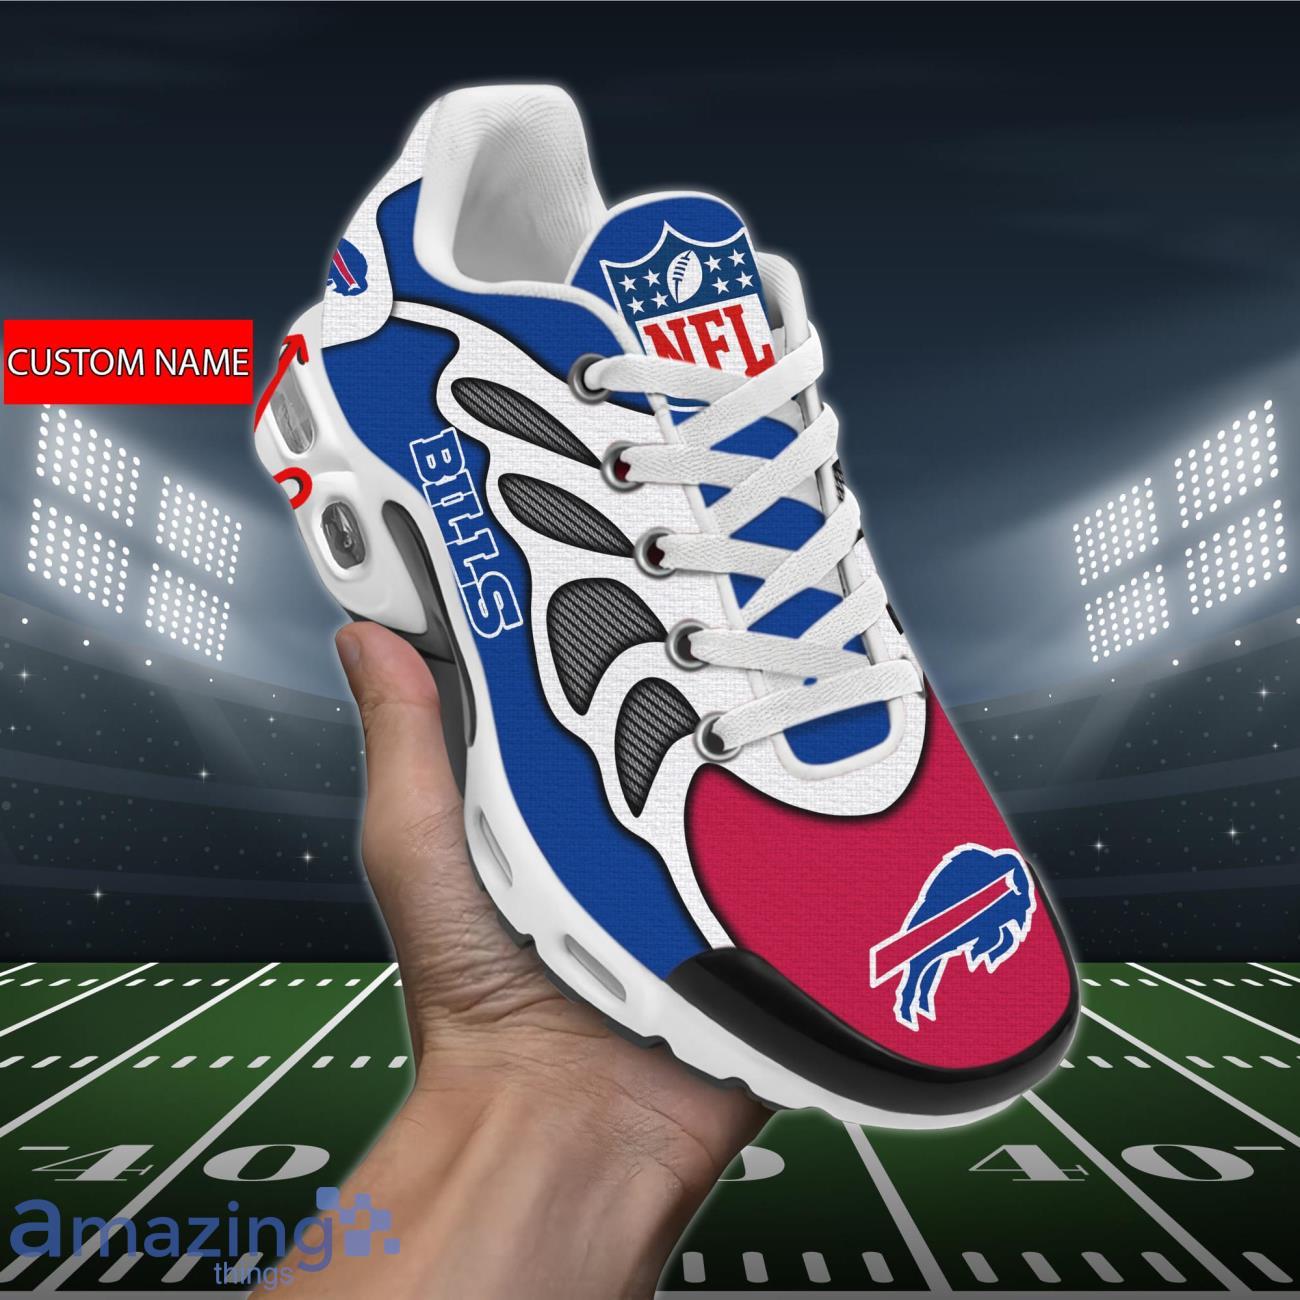 Føderale Fantasifulde Endelig Buffalo Bills 3D Air Cushion Sports Shoes Custom Name For Fans NFL